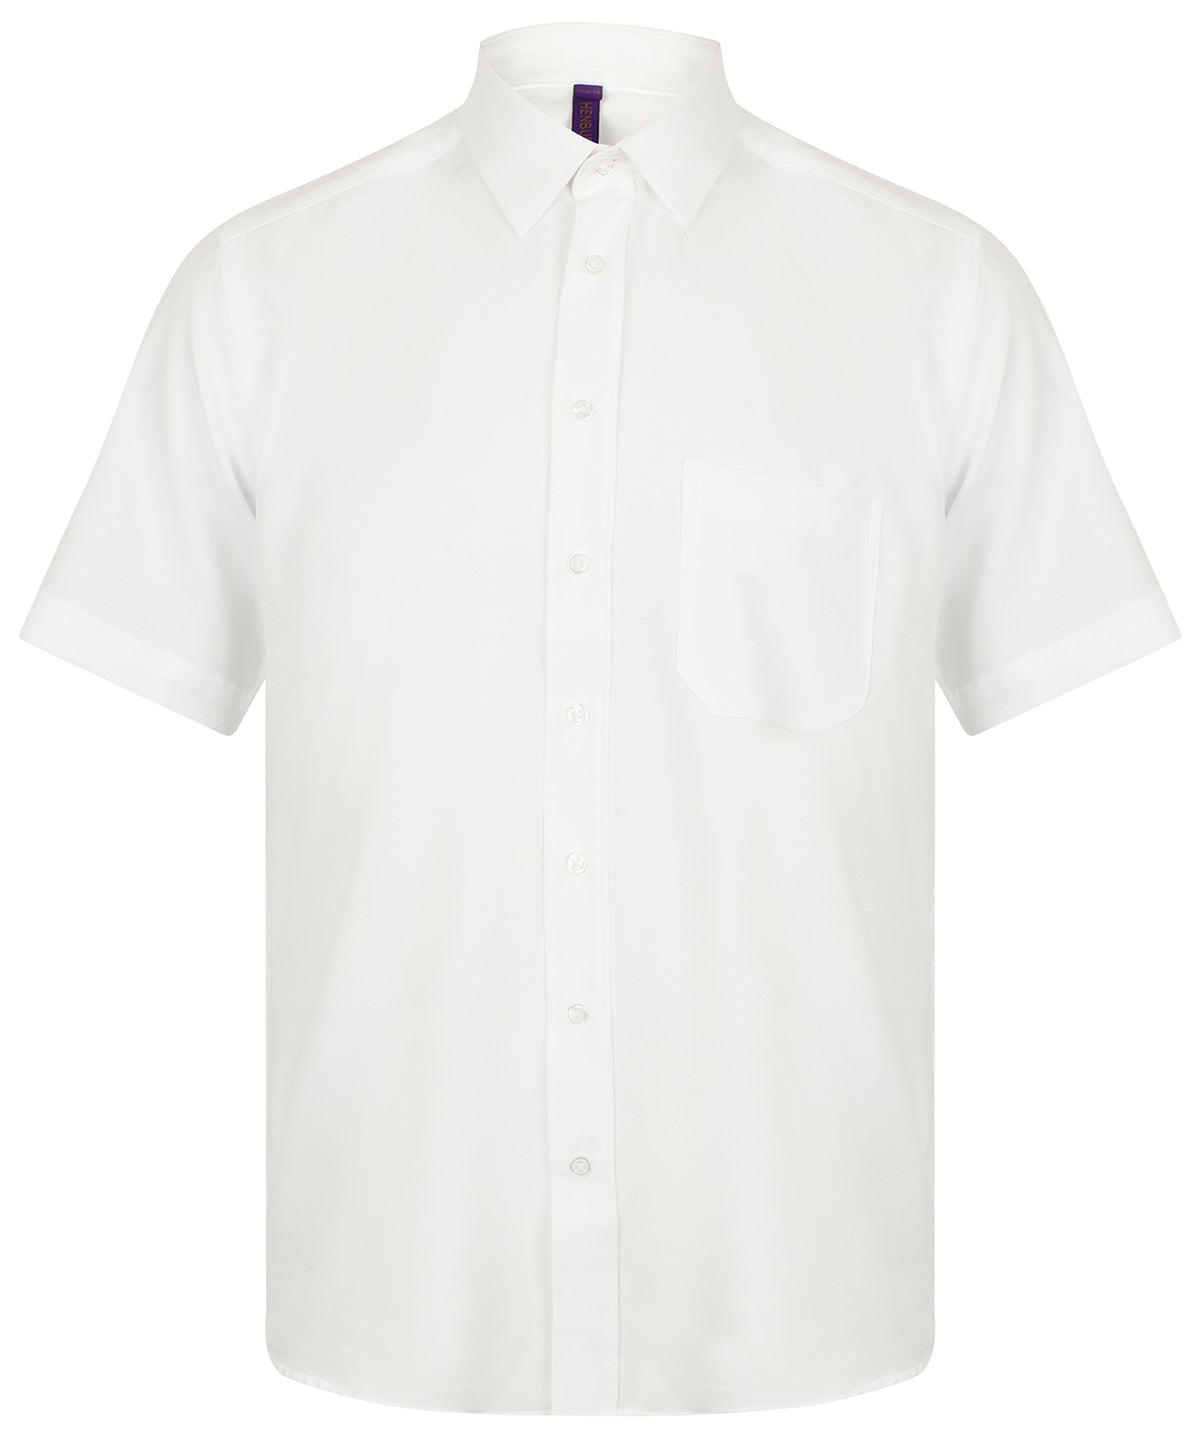 Henbury Wicking antibacterial short sleeve shirt